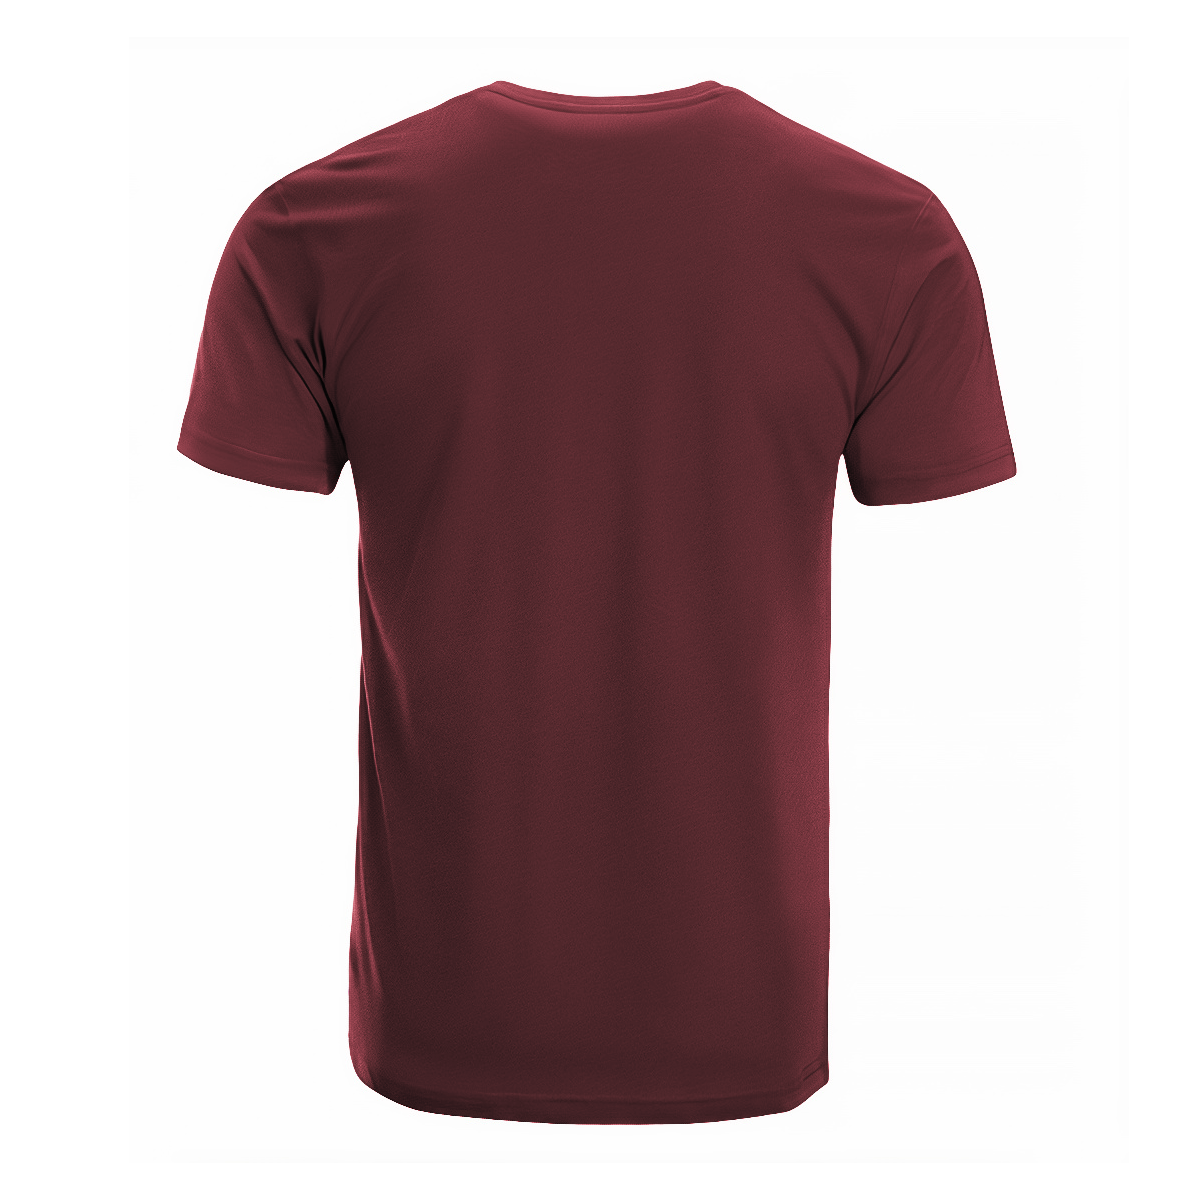 MacFadyen Tartan Crest T-shirt - I'm not yelling style